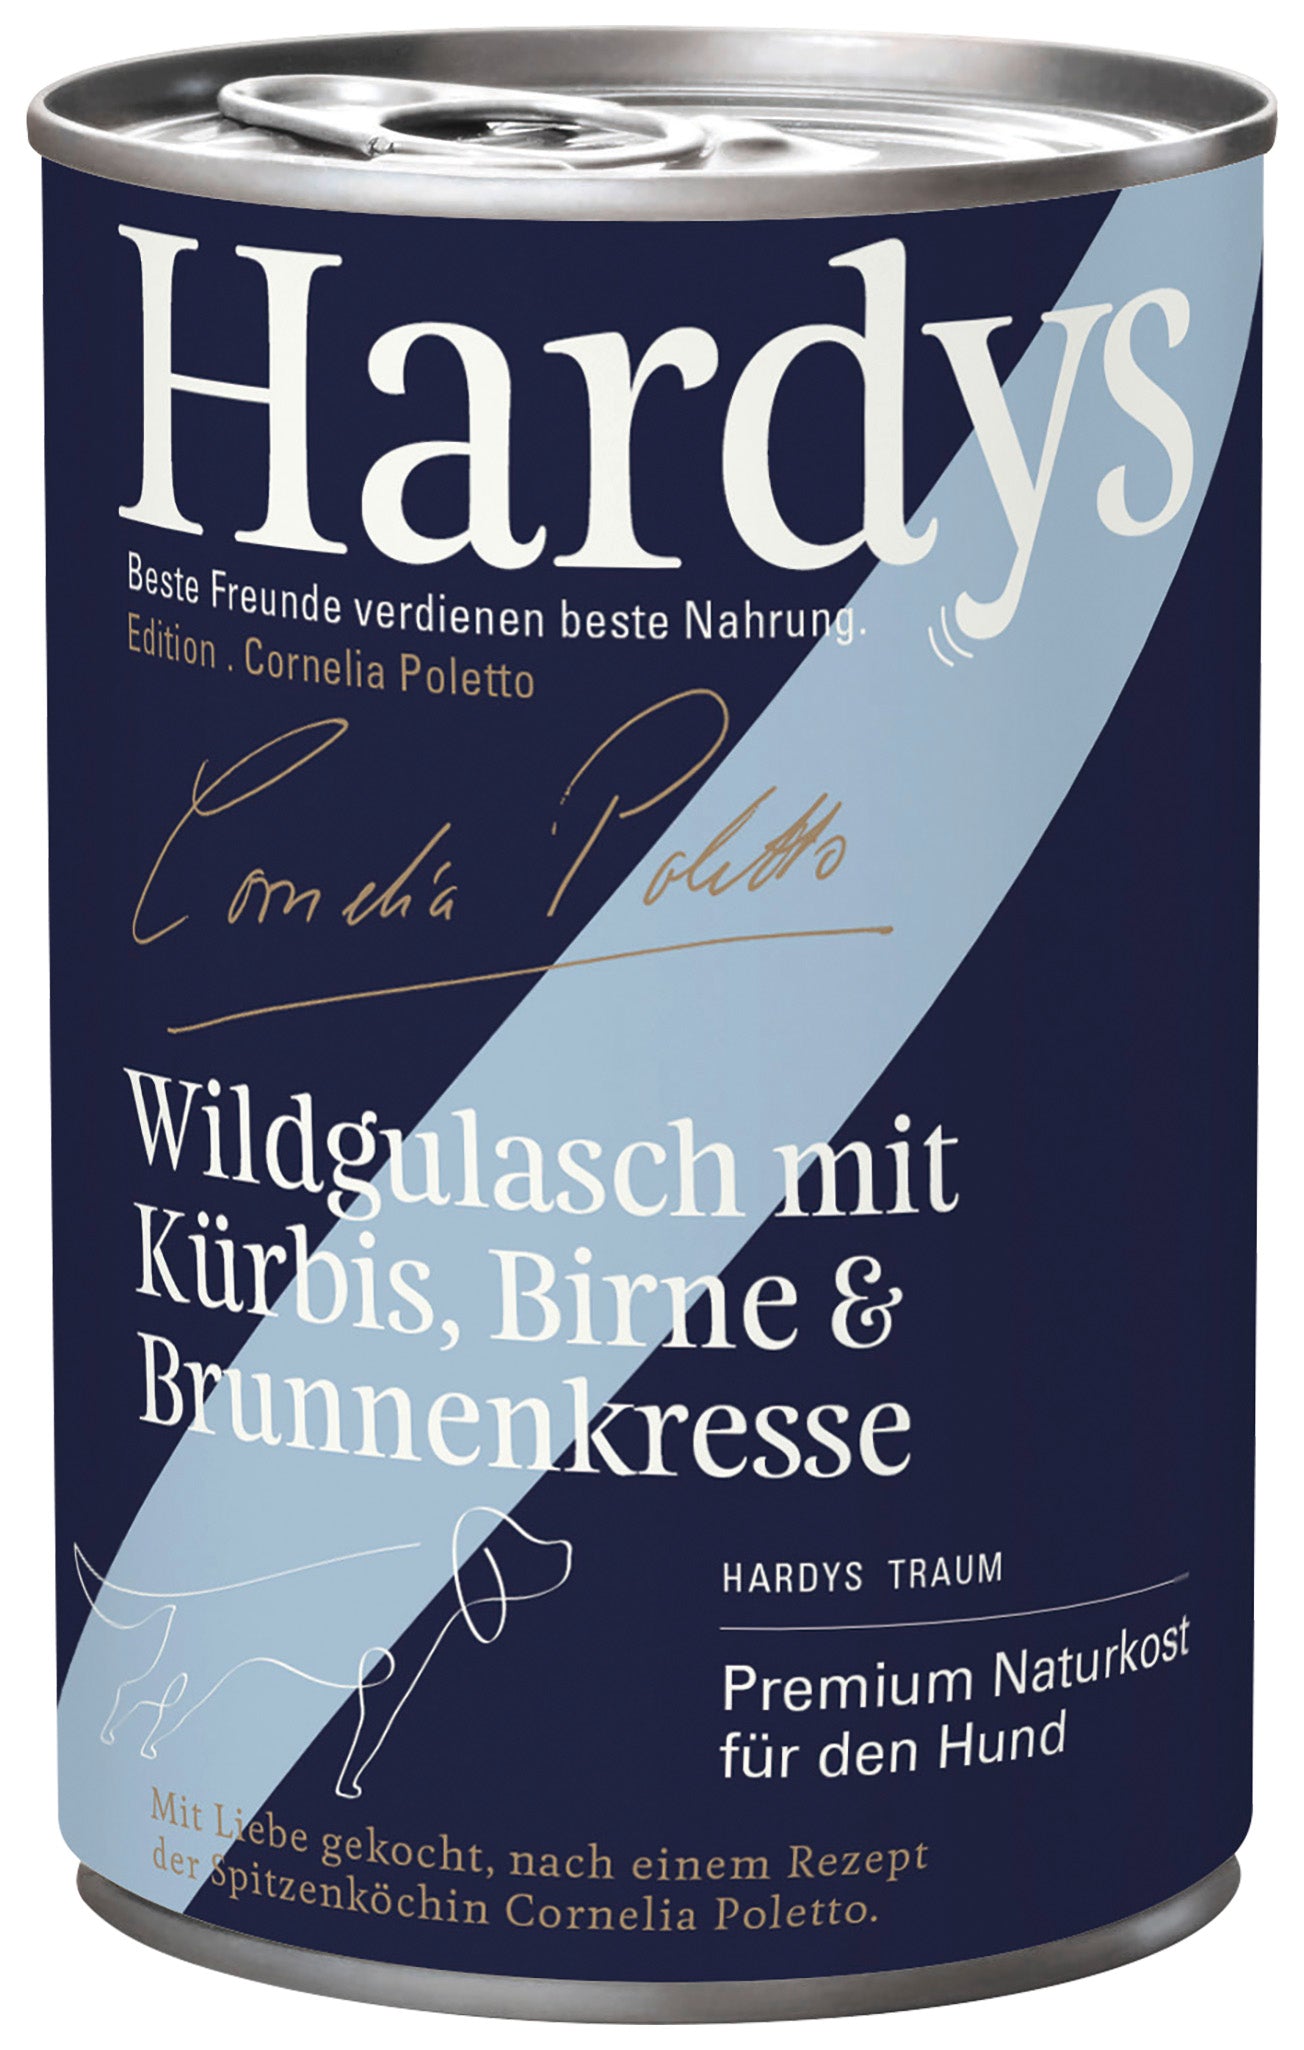 Hardys Edition Poletto • Wildgulasch mit Kürbis & Brunnenkresse 400g